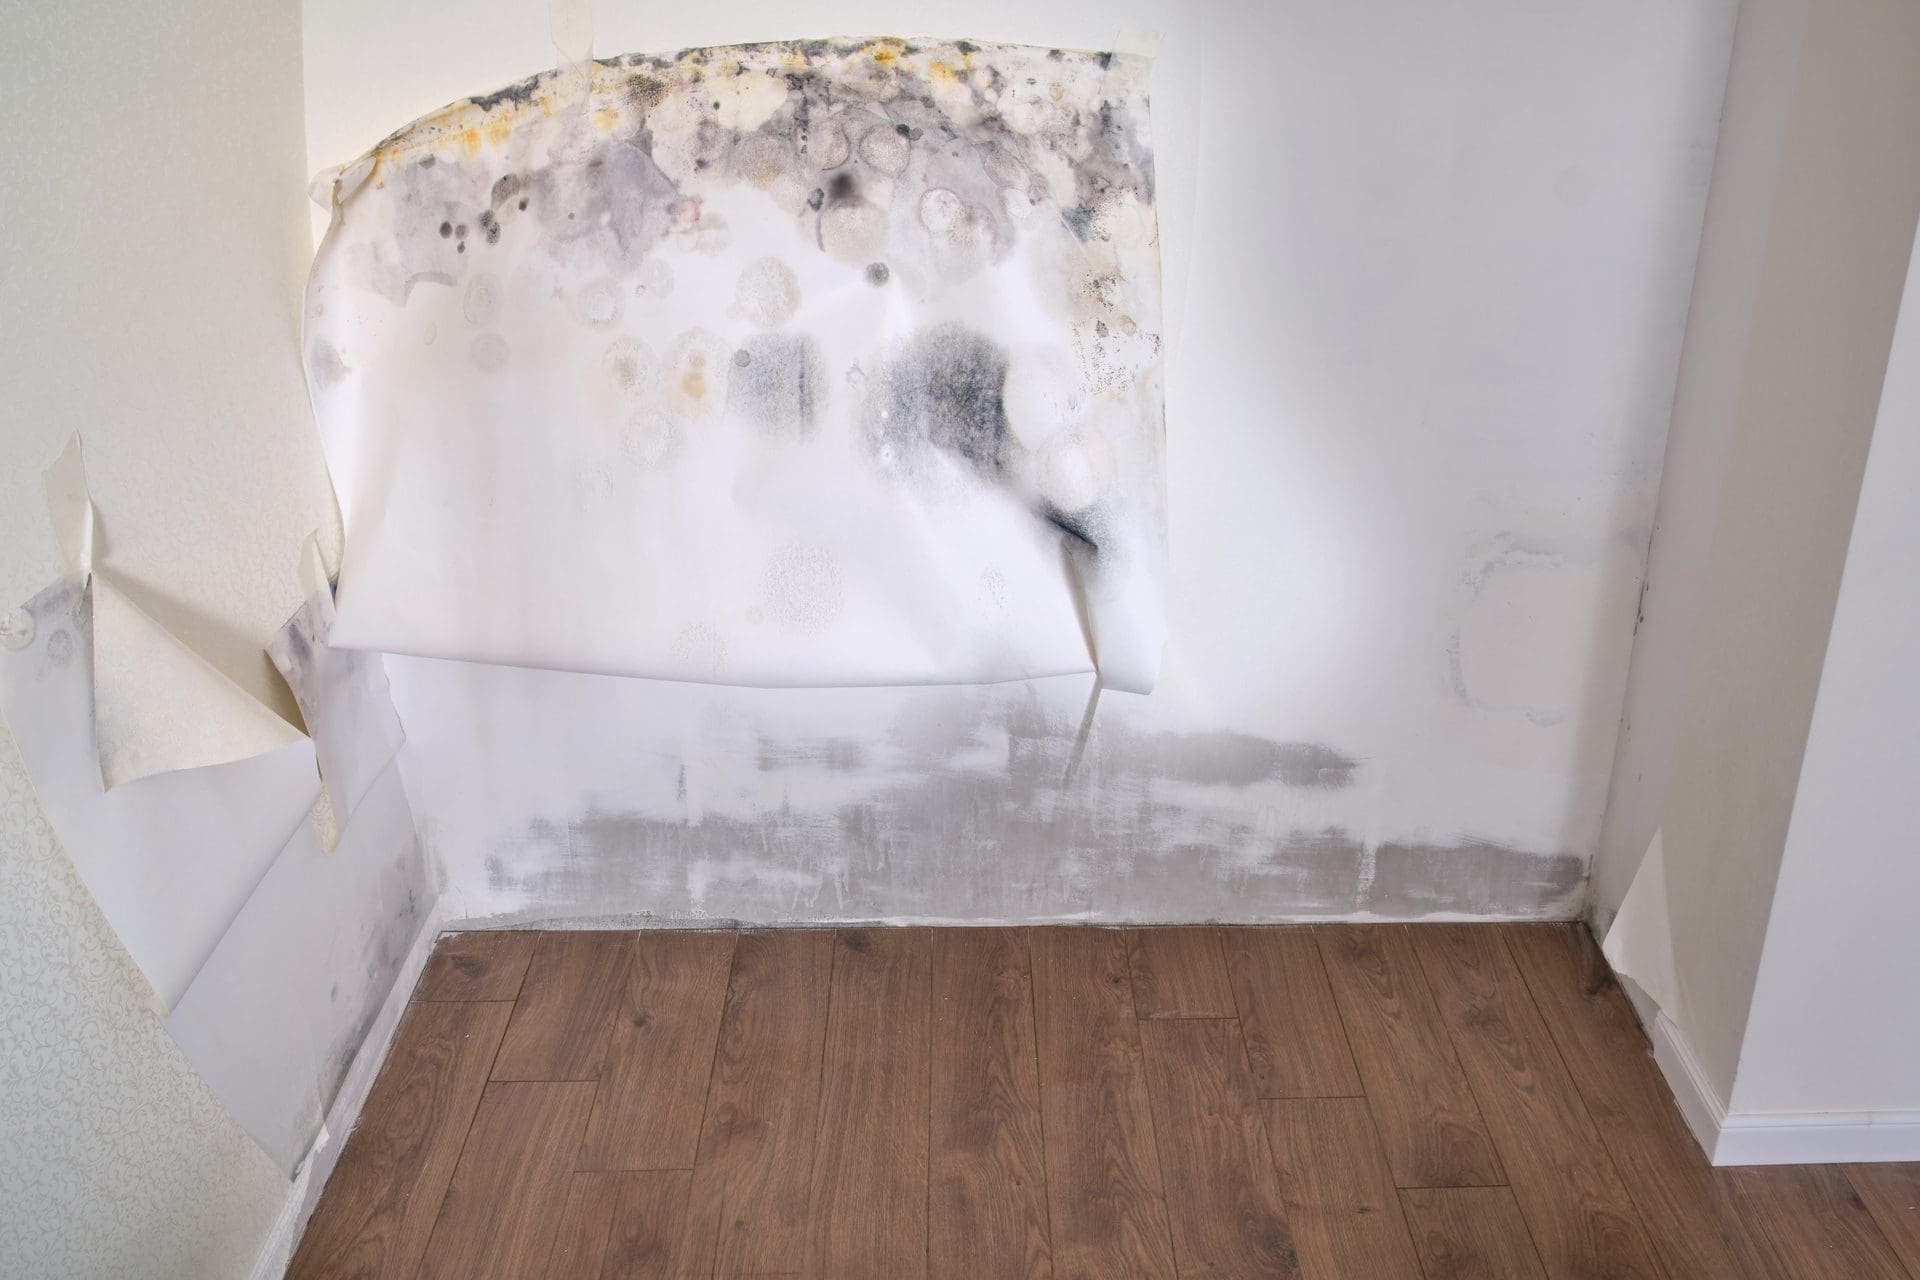 Verschimmelte Wand und Tapete - was kann ich tun?! (© stock.adobe.com)